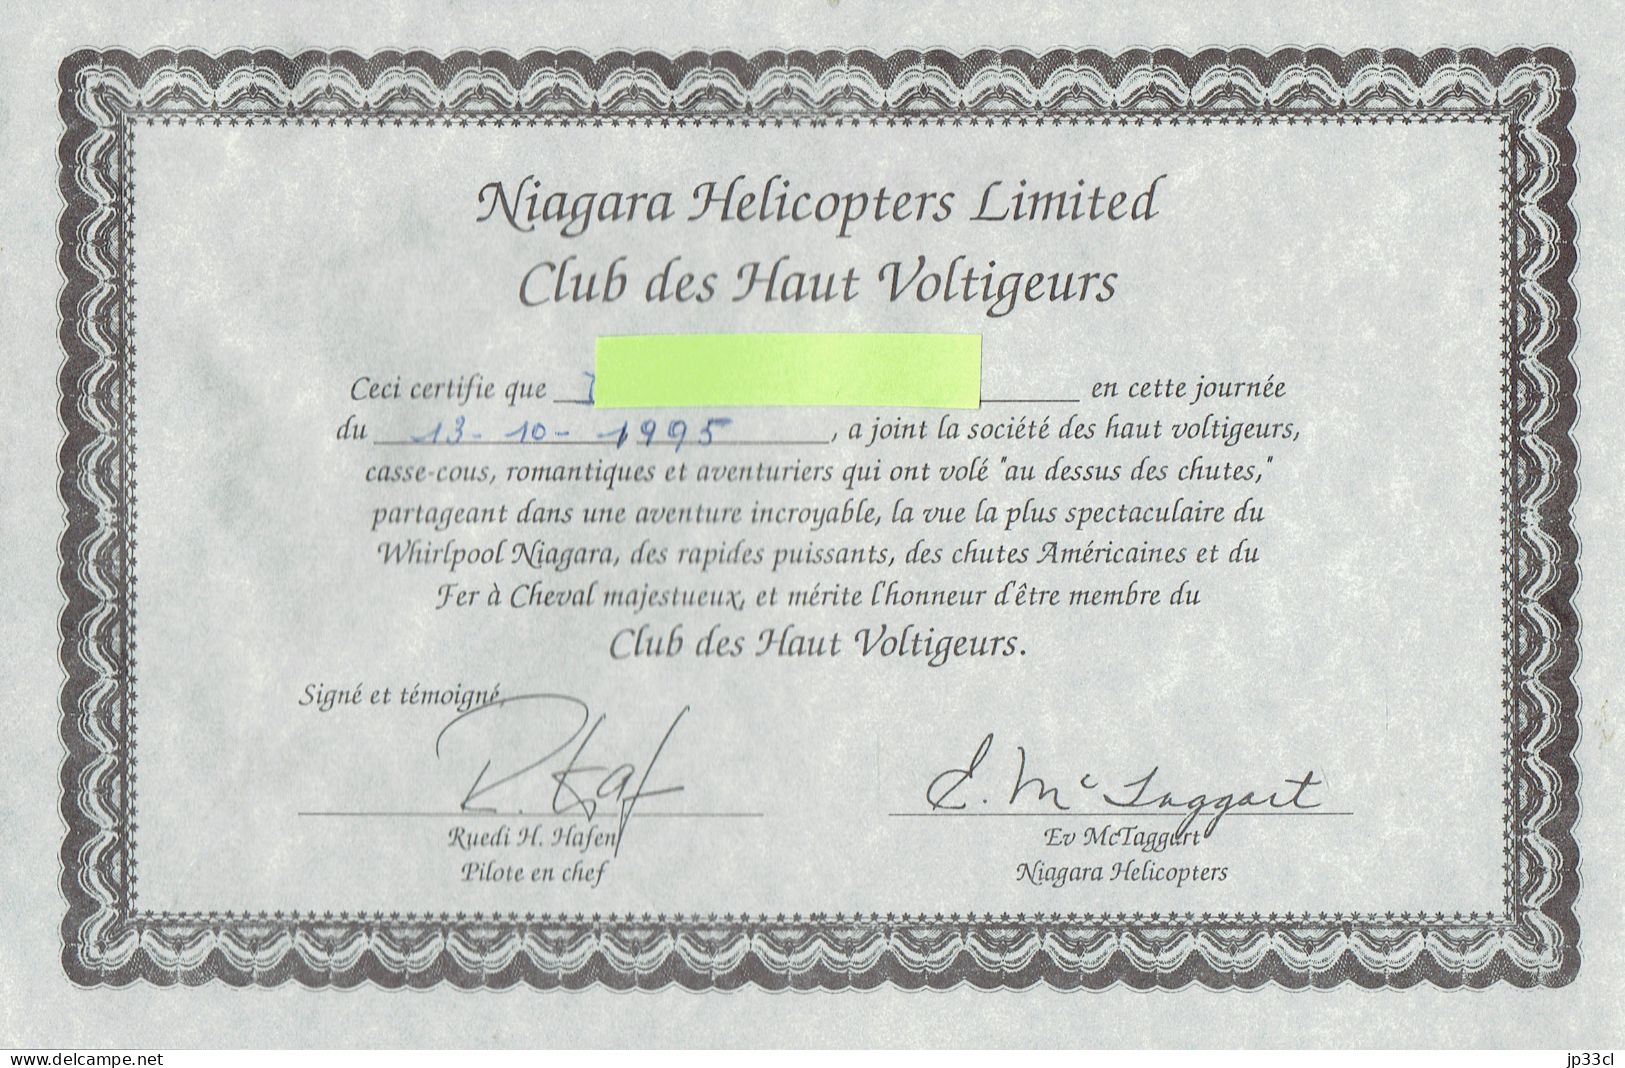 Les Chutes Du Niagara Vues D'hélicoptère (helicopter) Ticket D'embarquement + 9 Photos Prises à Bord + Diplôme (1995) - América